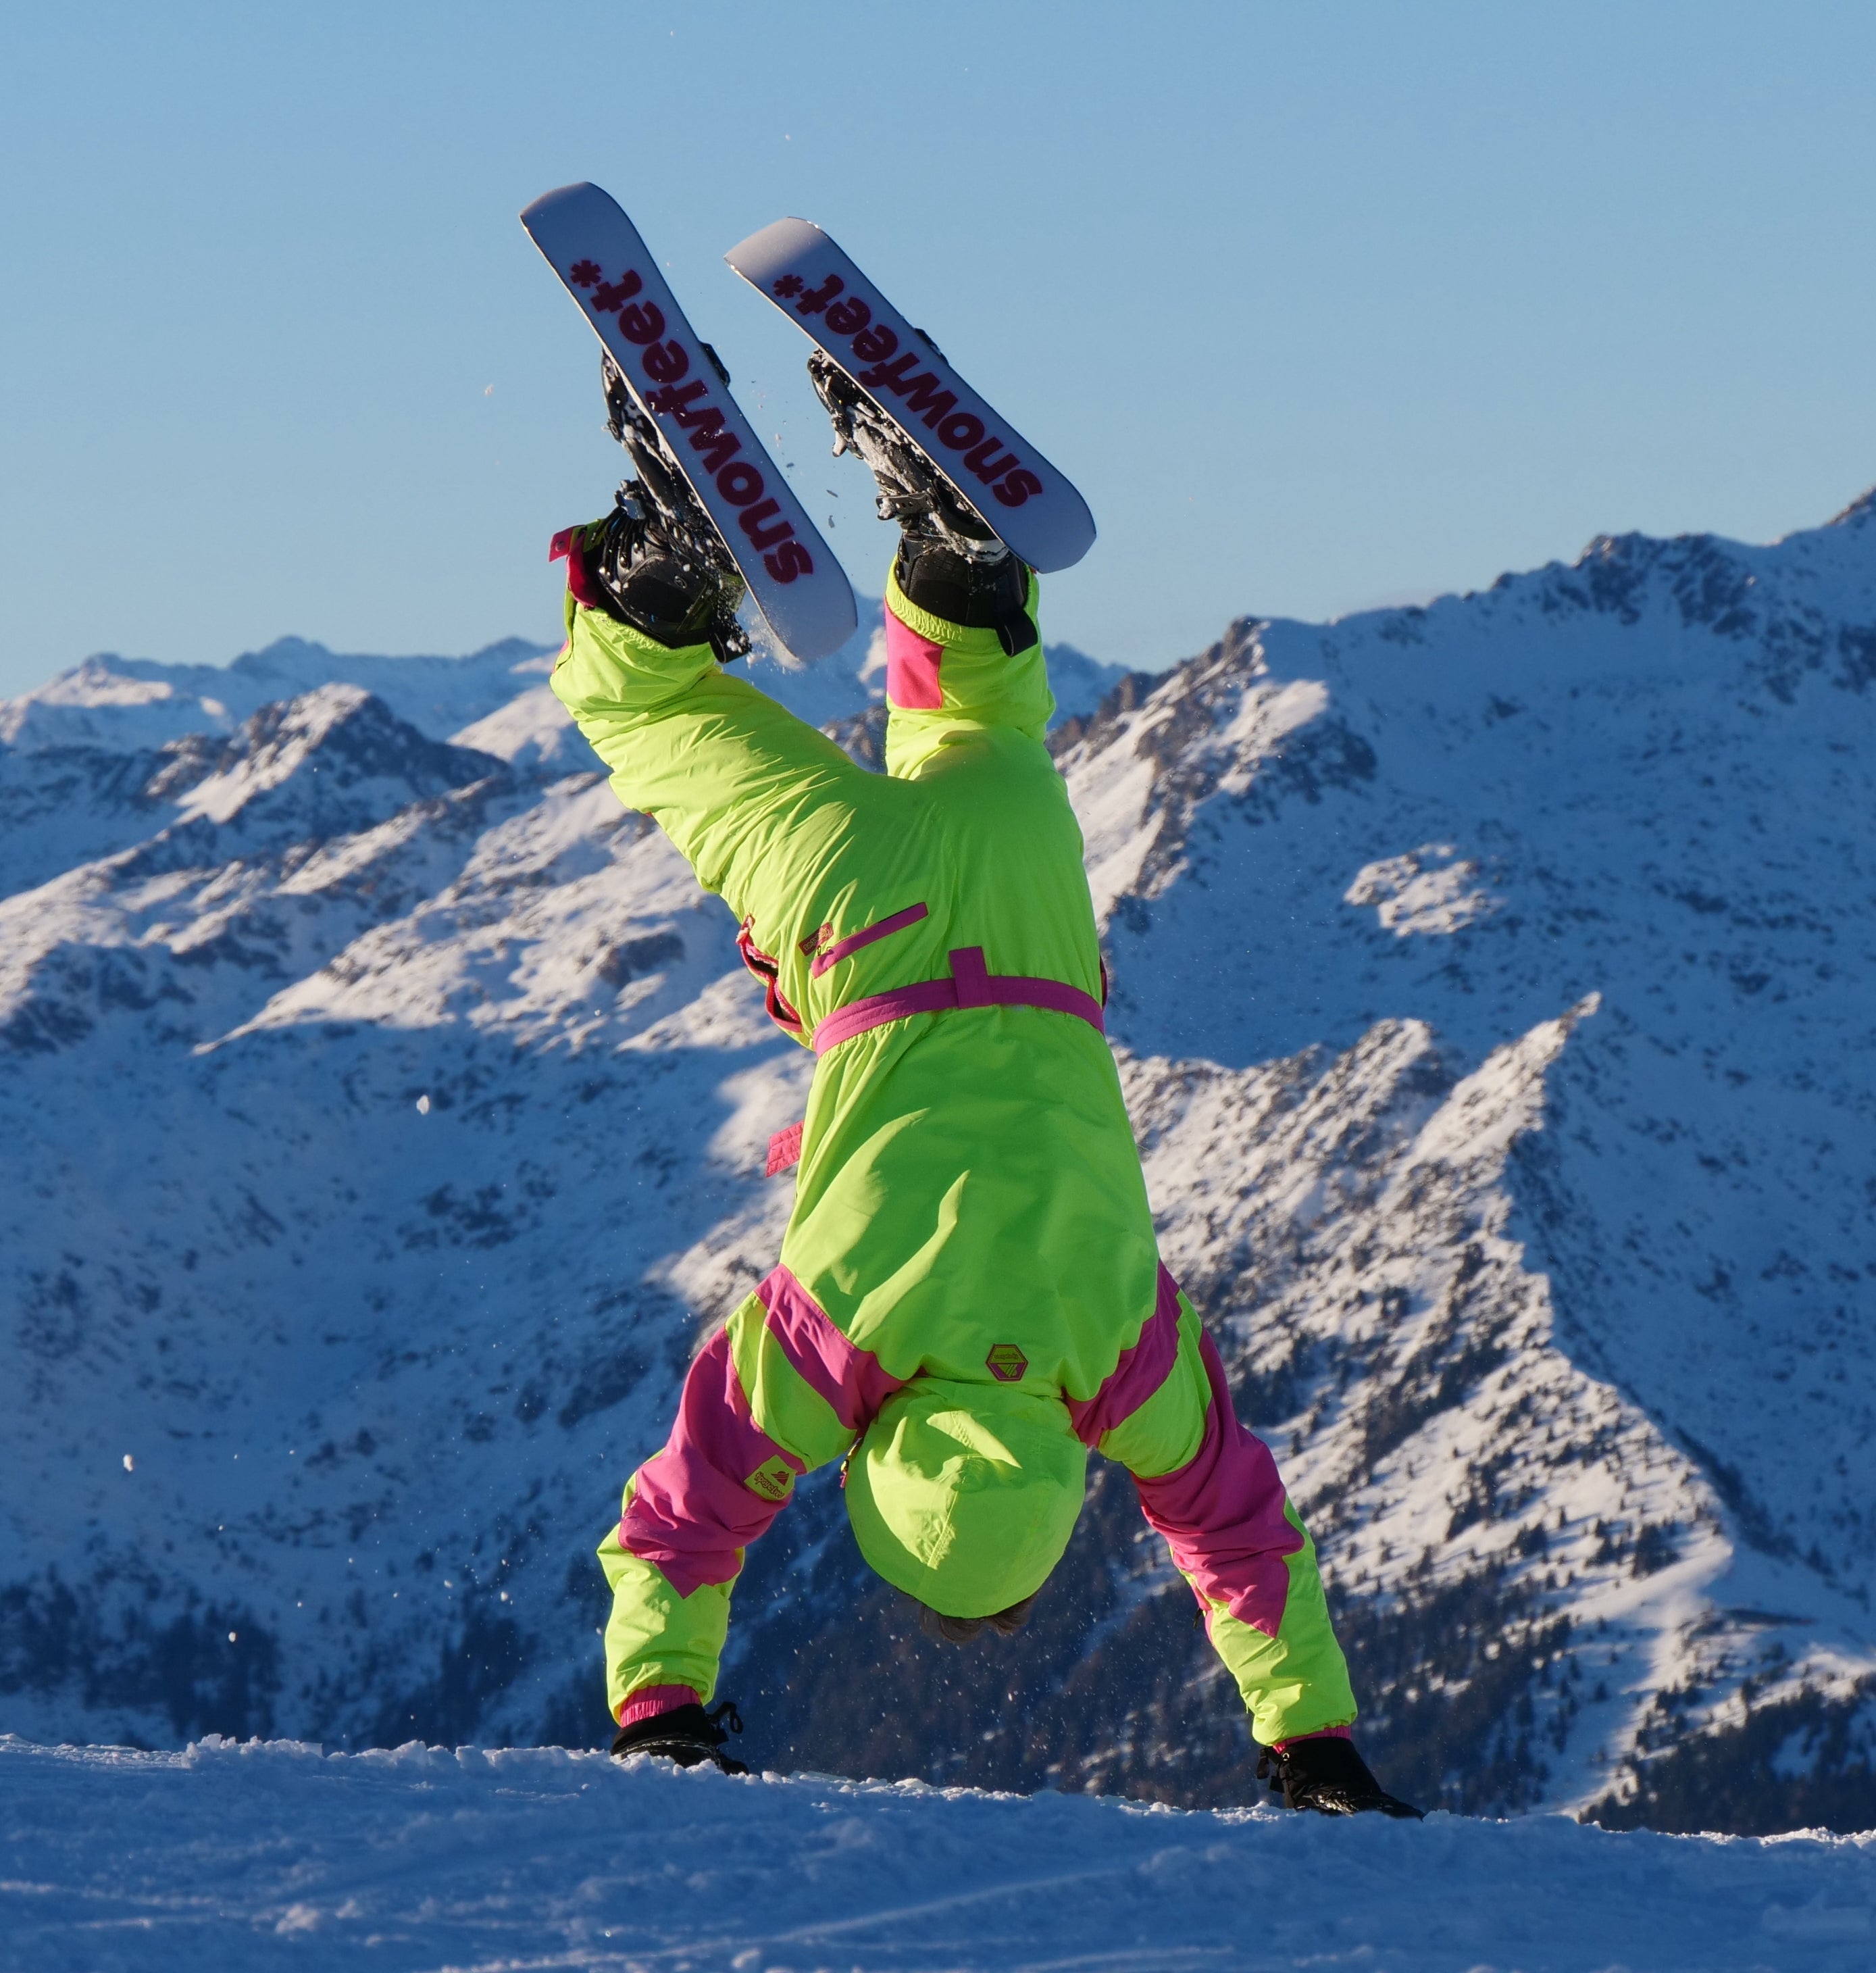  skiing, resort, short skis, skiskates, skiboards, skiblades, snowfeet, mountains, winter,